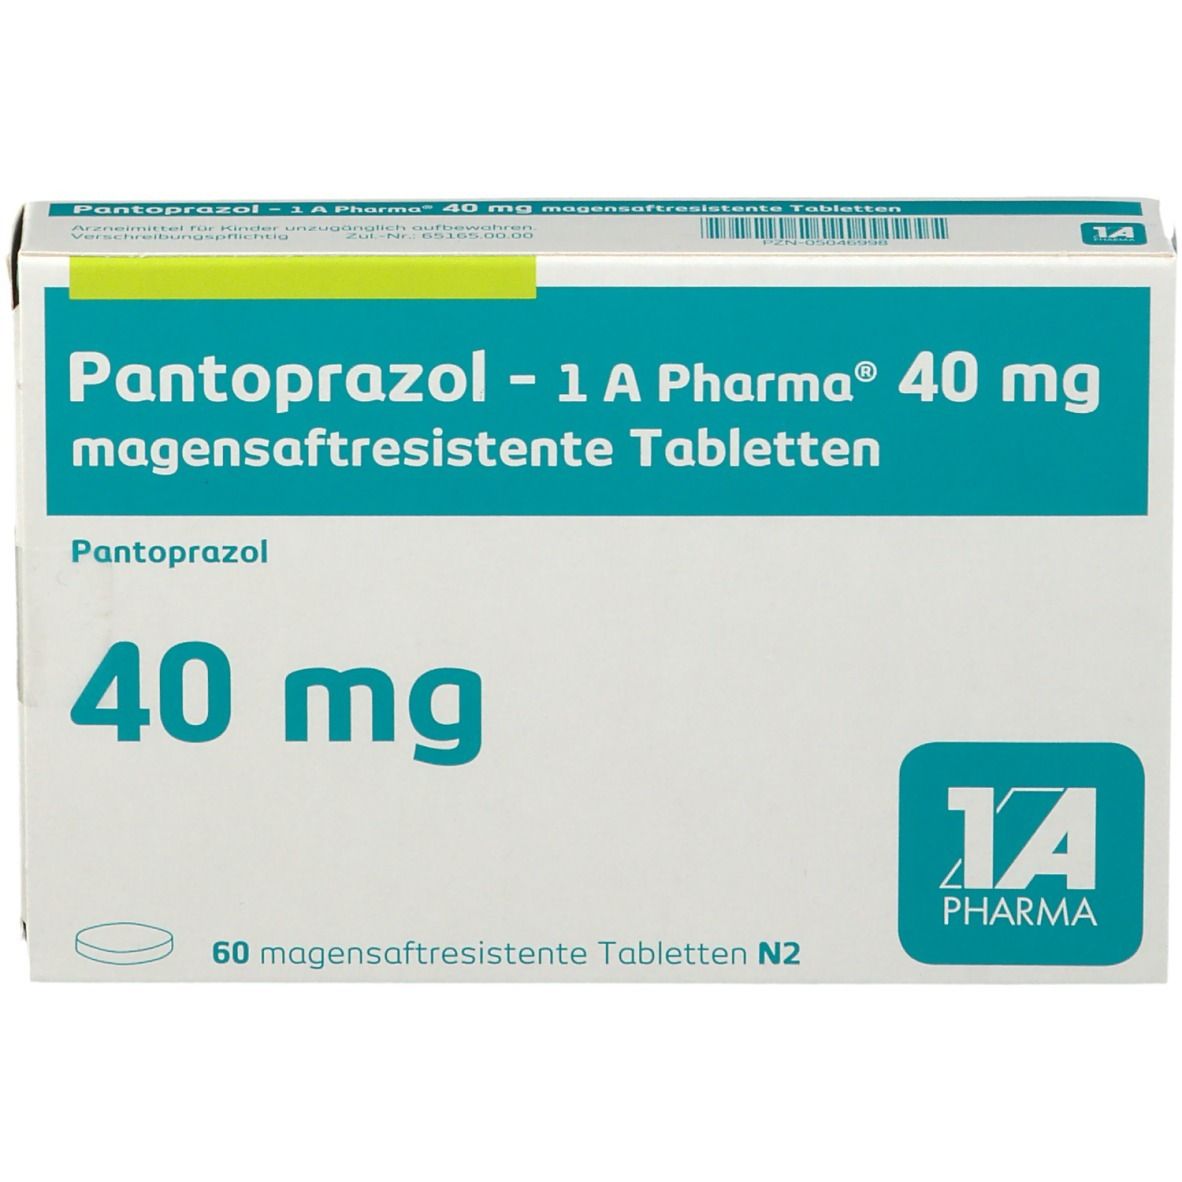 Pantoprazol 1A Pharma® 40Mg